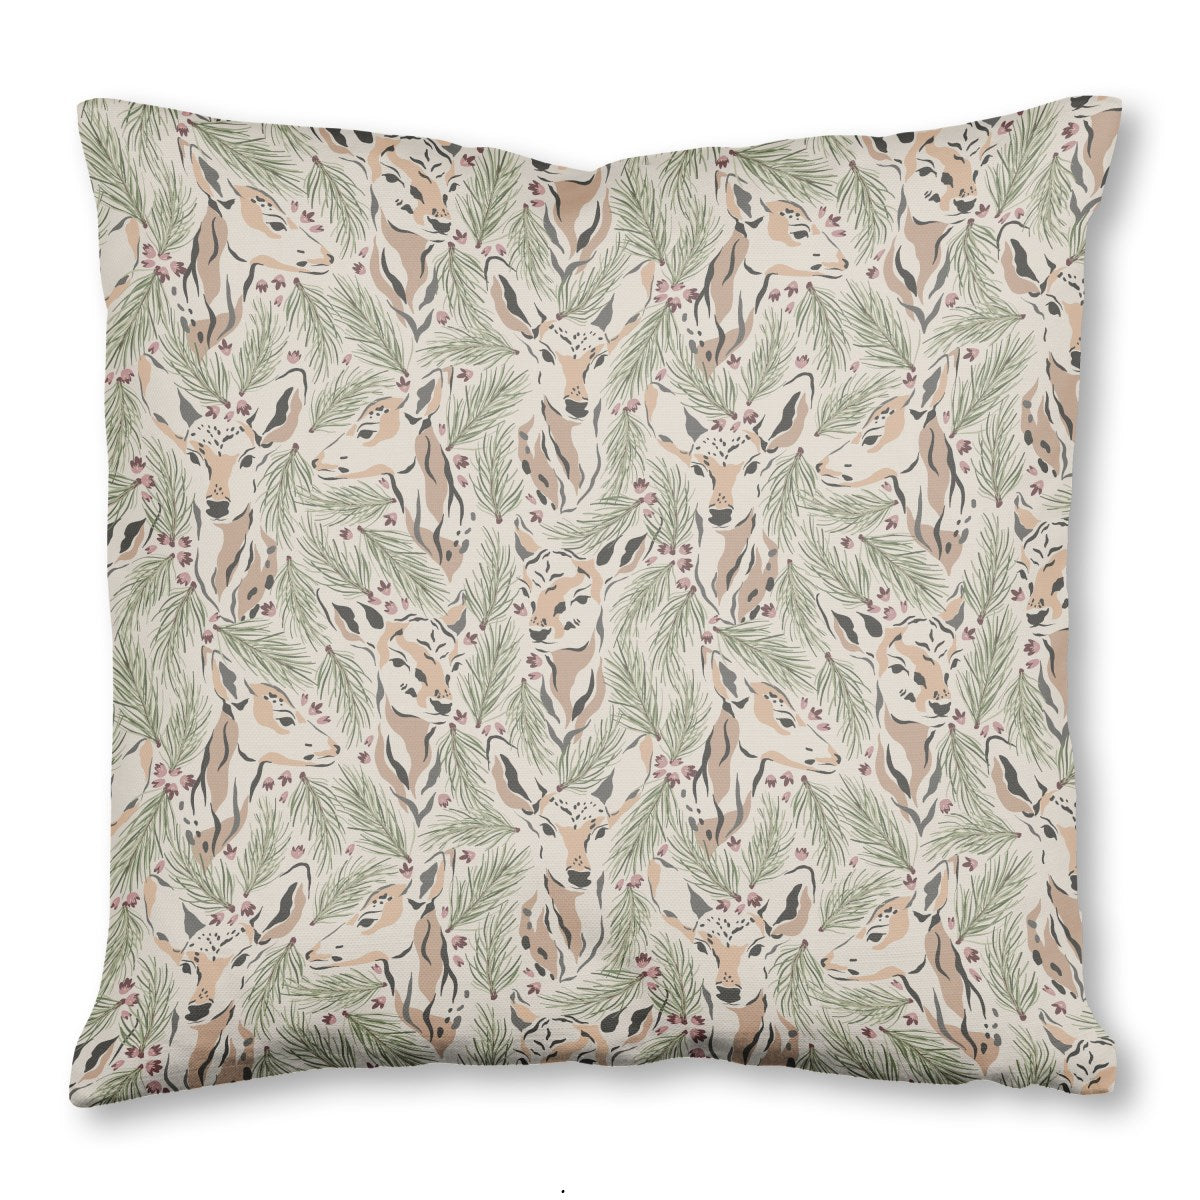 Evergreen Deer Throw Pillow